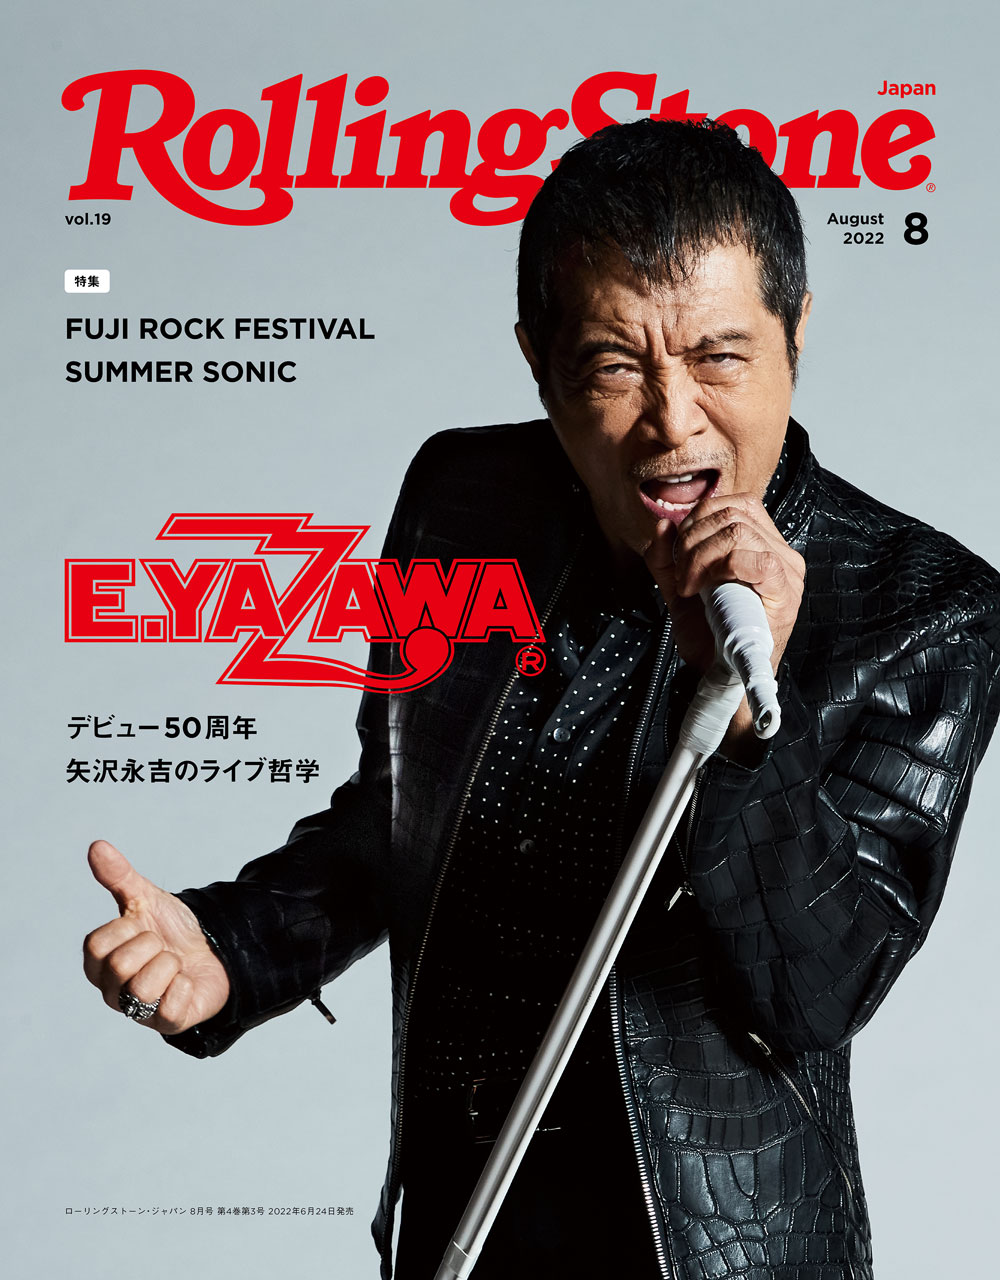 6/24(金)発売「Rolling Stone Japan vol.19」にインタビューが掲載され